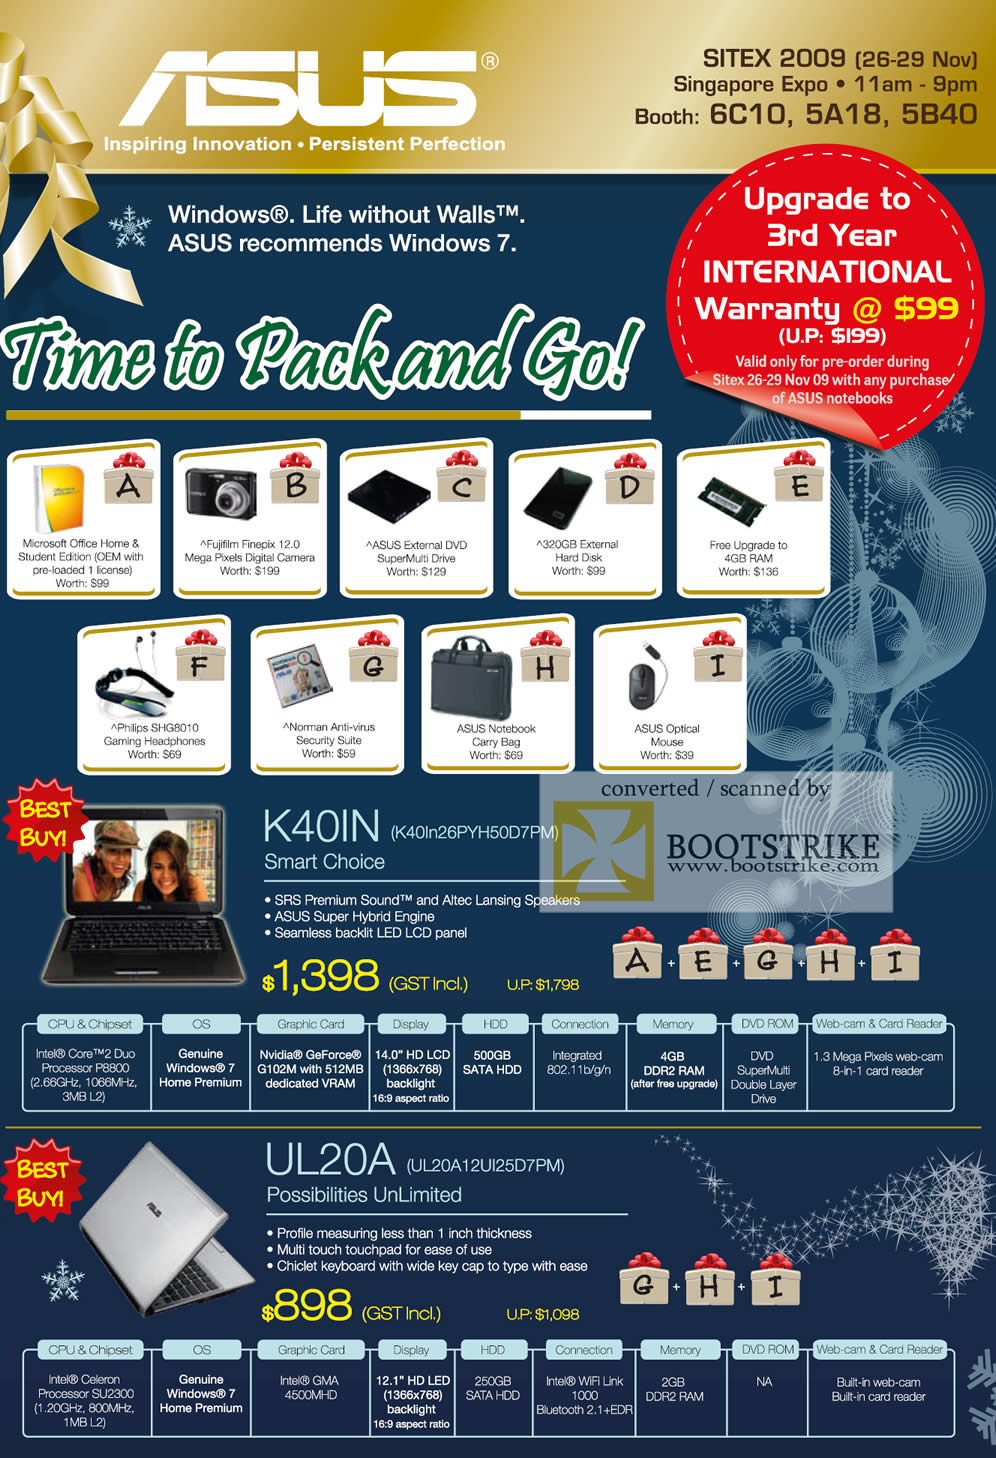 Sitex 2009 price list image brochure of ASUS K40IN UL20 Notebooks